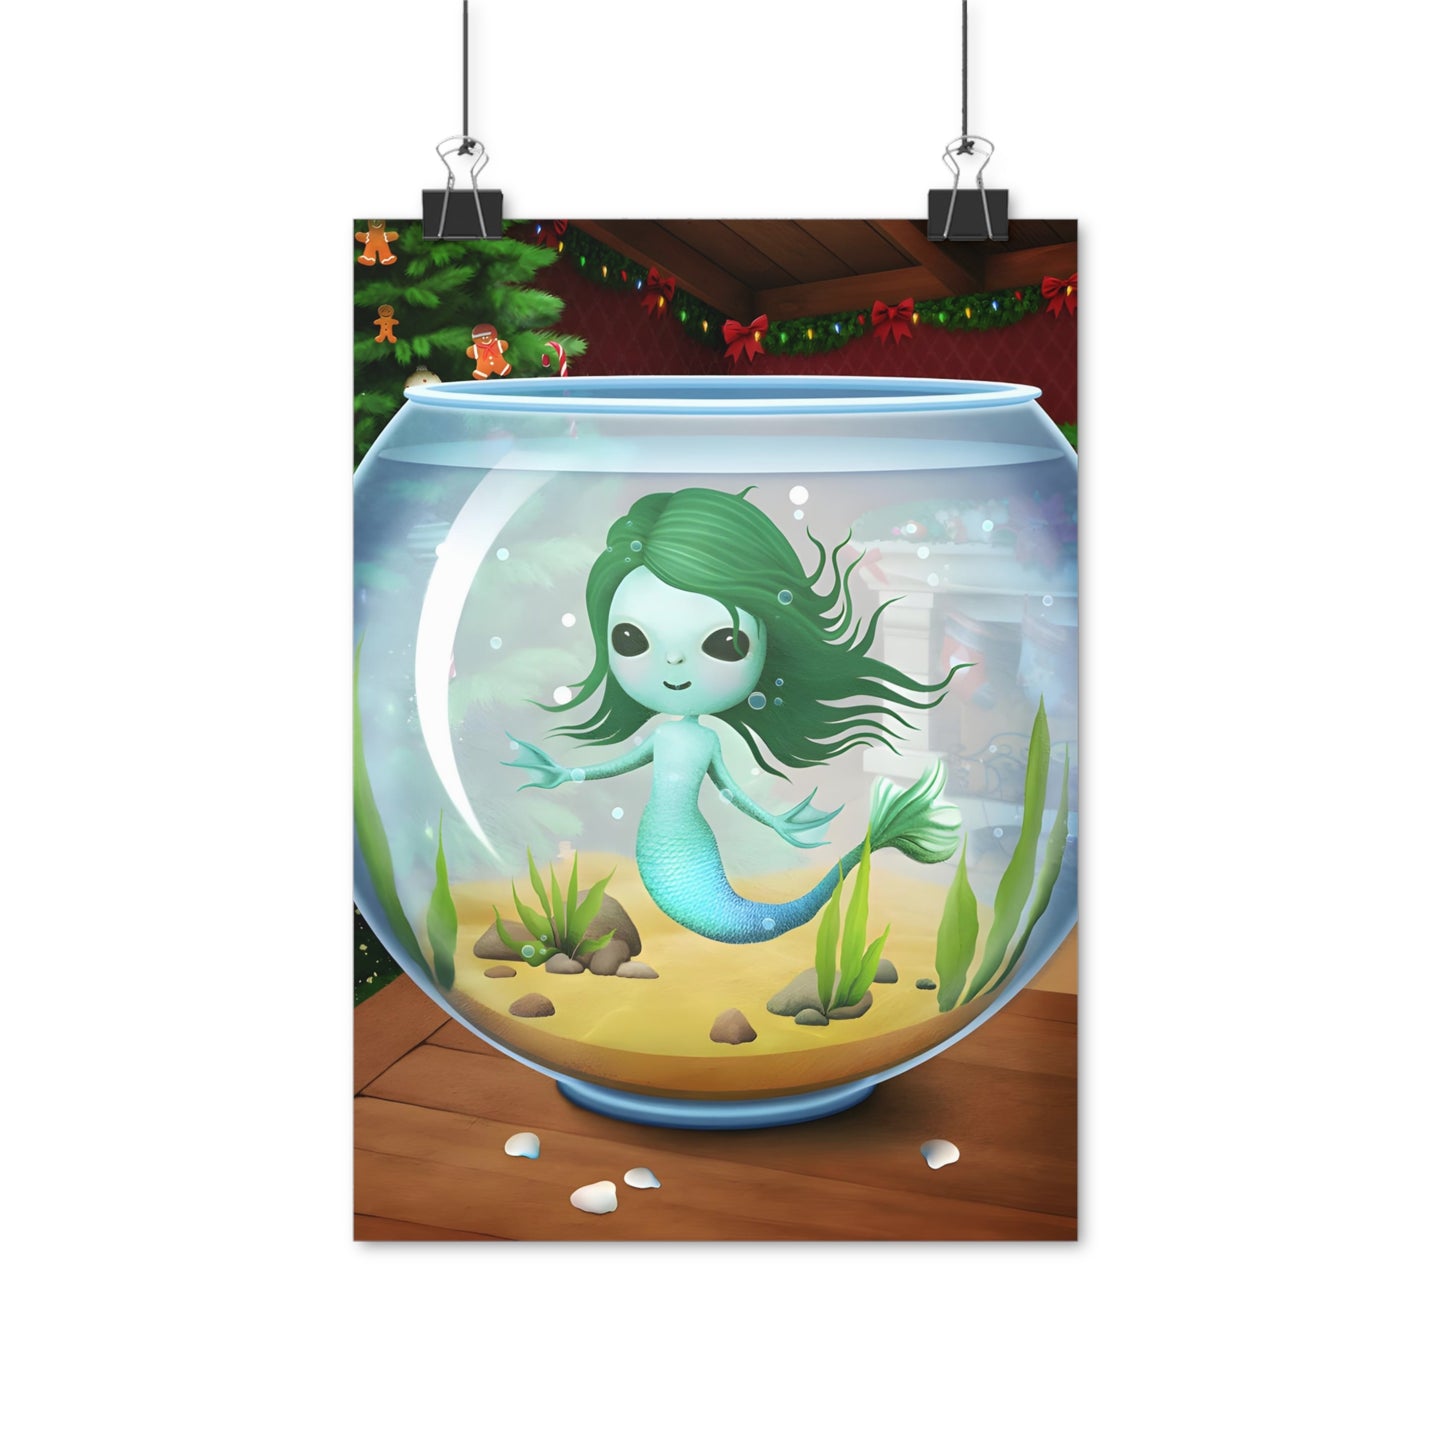 Posters - Christmas Mermaid